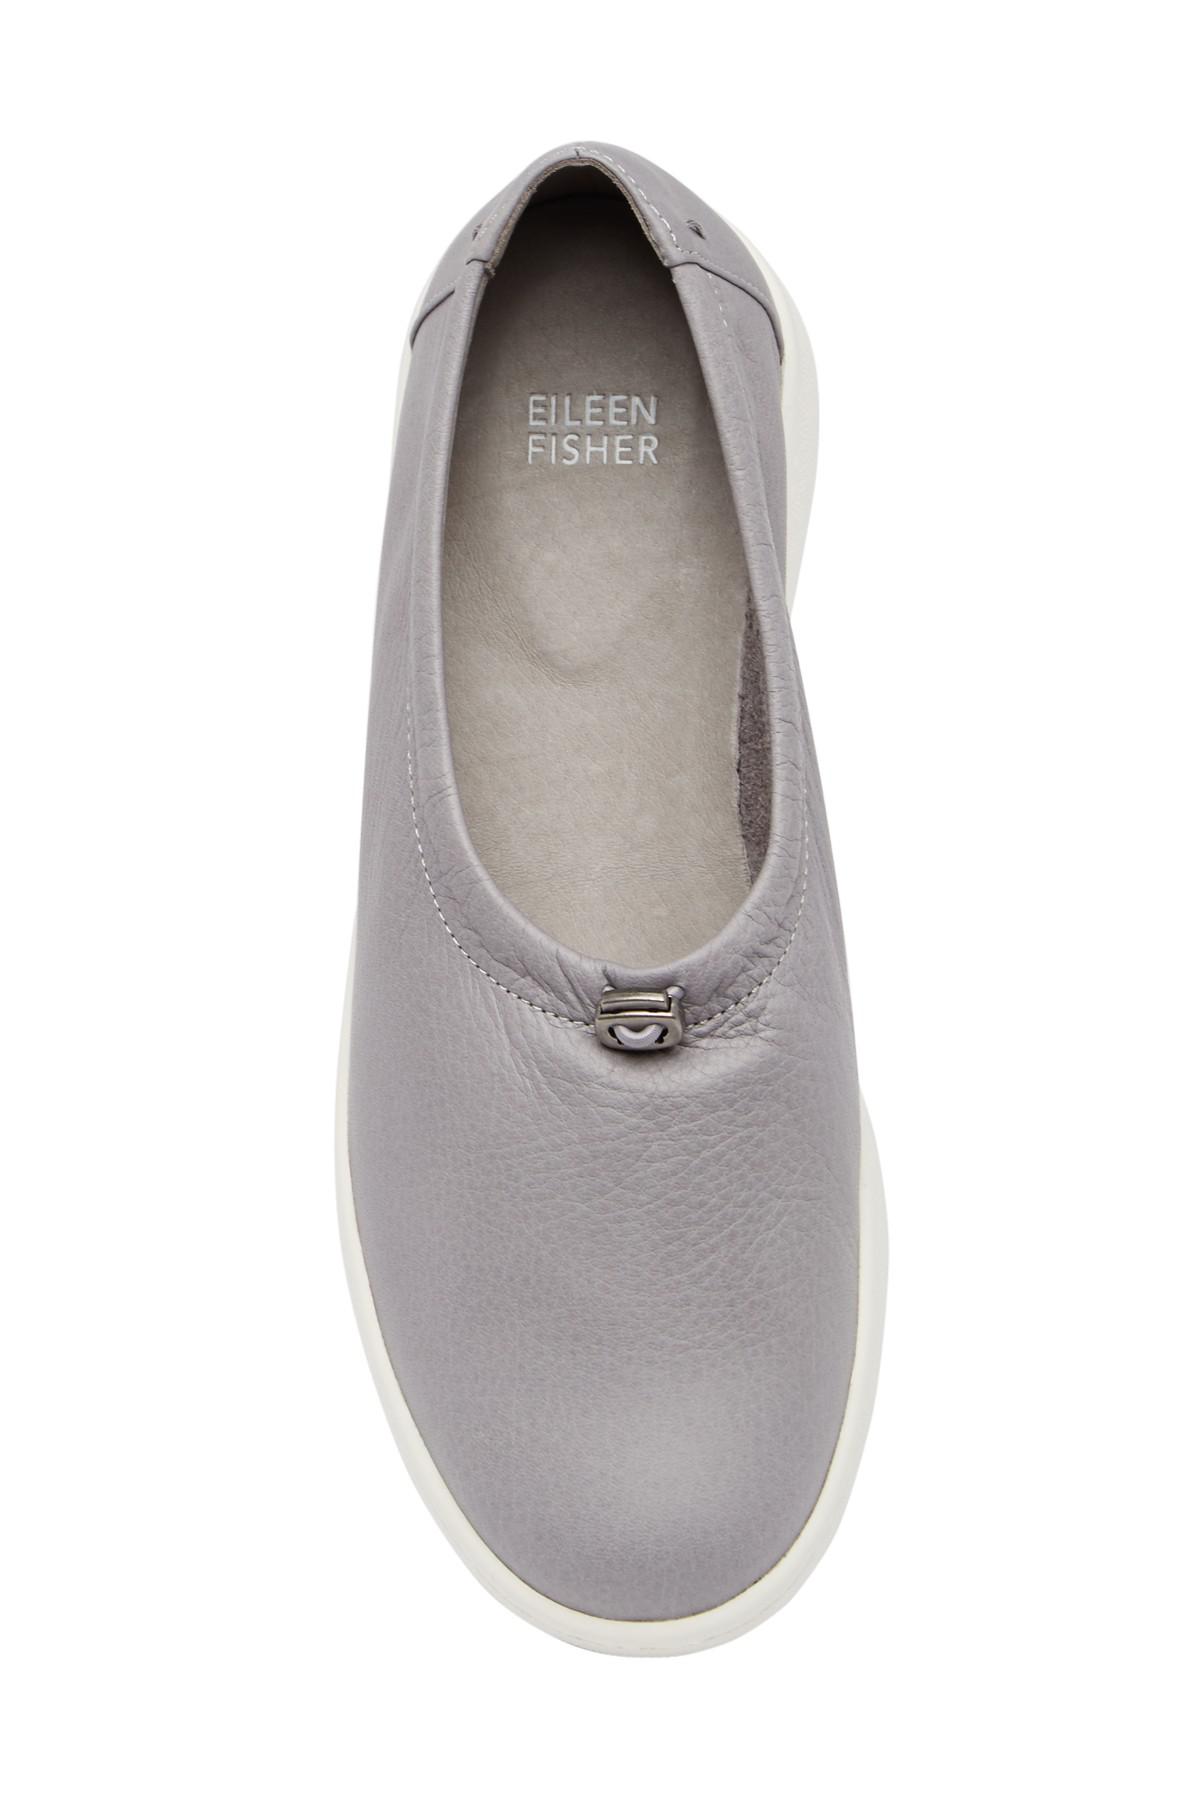 Eileen Fisher Leather Sydney Slip-on Sneaker in Gray - Lyst